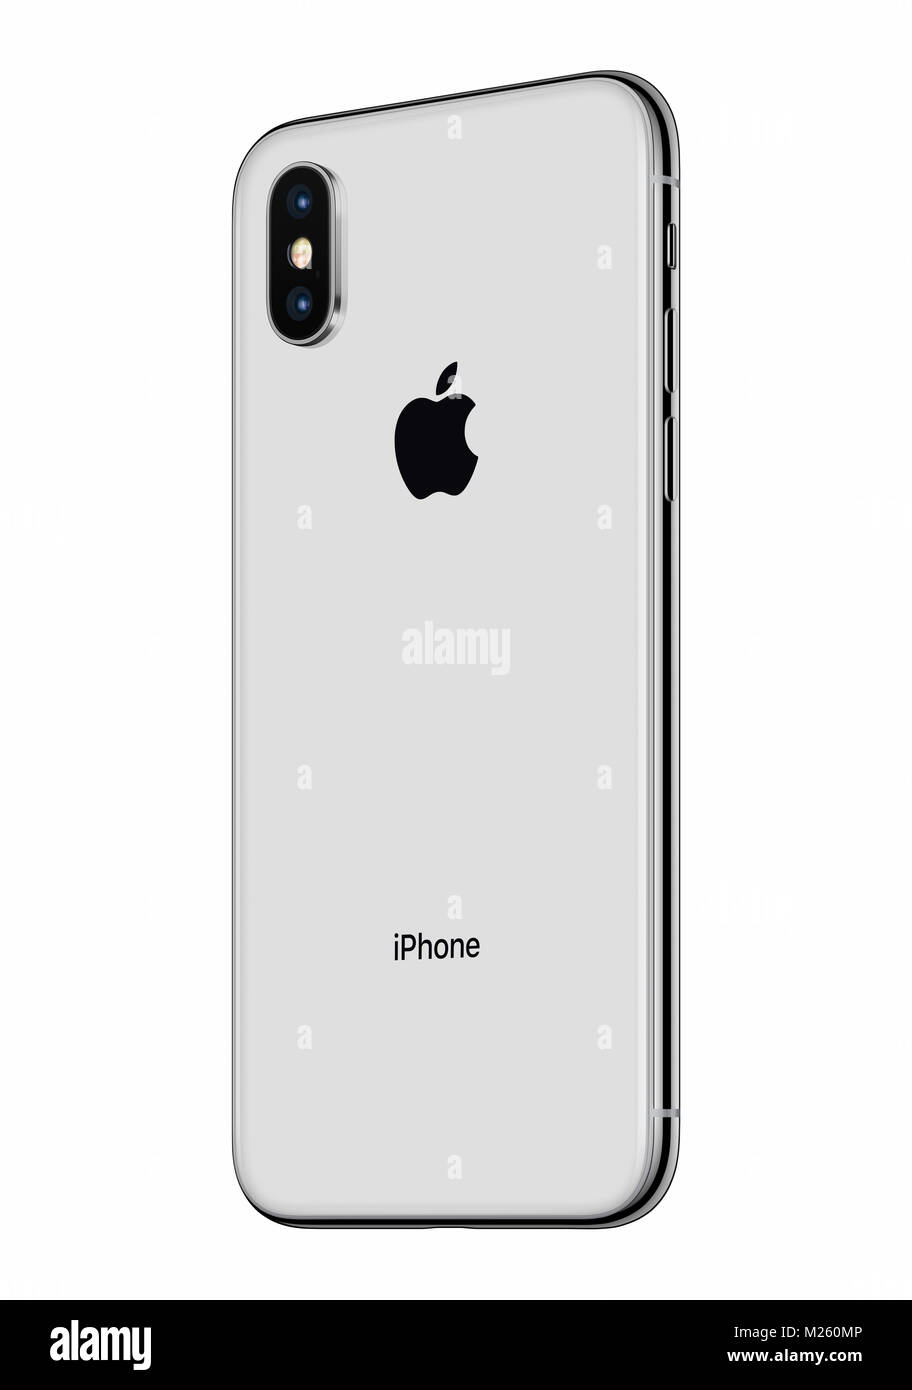 Silber Apple iphone x Rückseite leicht gedreht isoliert auf weißem Hintergrund. iPhone 10 ist das neueste Smartphone von Apple Inc mit rahmenlosen Design. Stockfoto